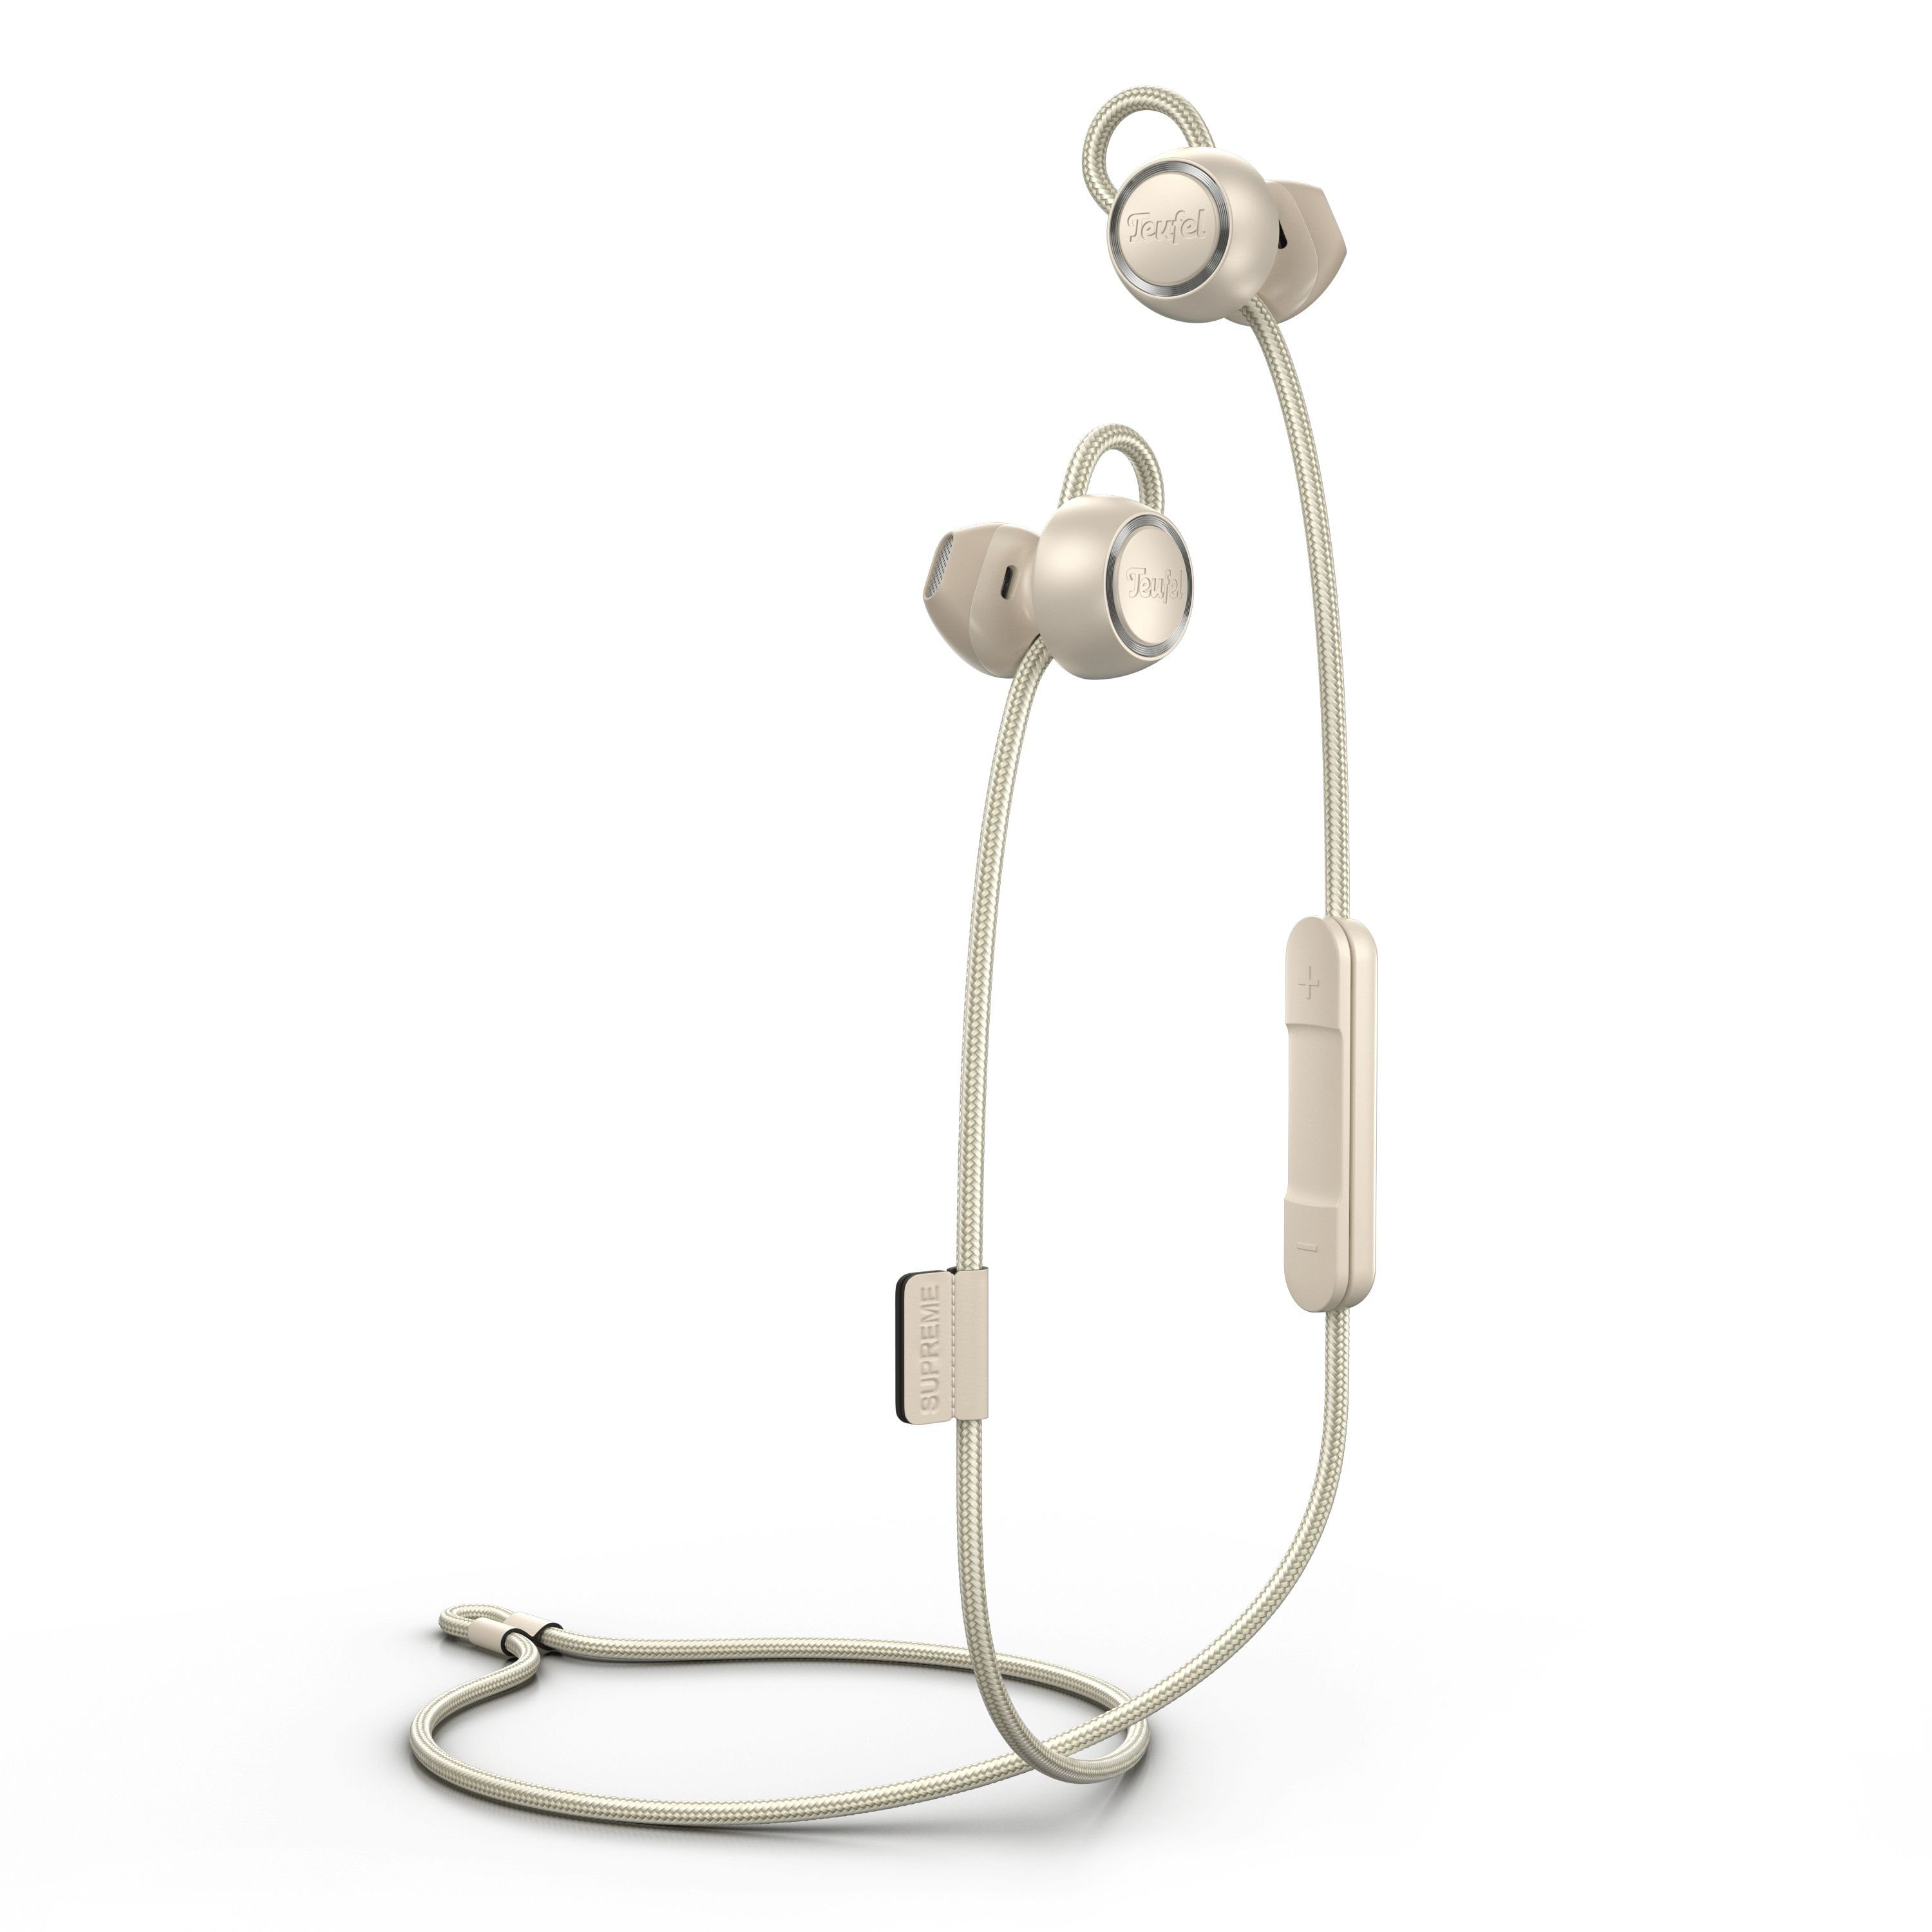 Teufel SUPREME IN Bluetooth-Kopfhörer (Freisprecheinrichtung mit Qualcomm, EQ, ShareMe- und weitere Einstellungen über die Teufel Headphones App möglich) Sand White